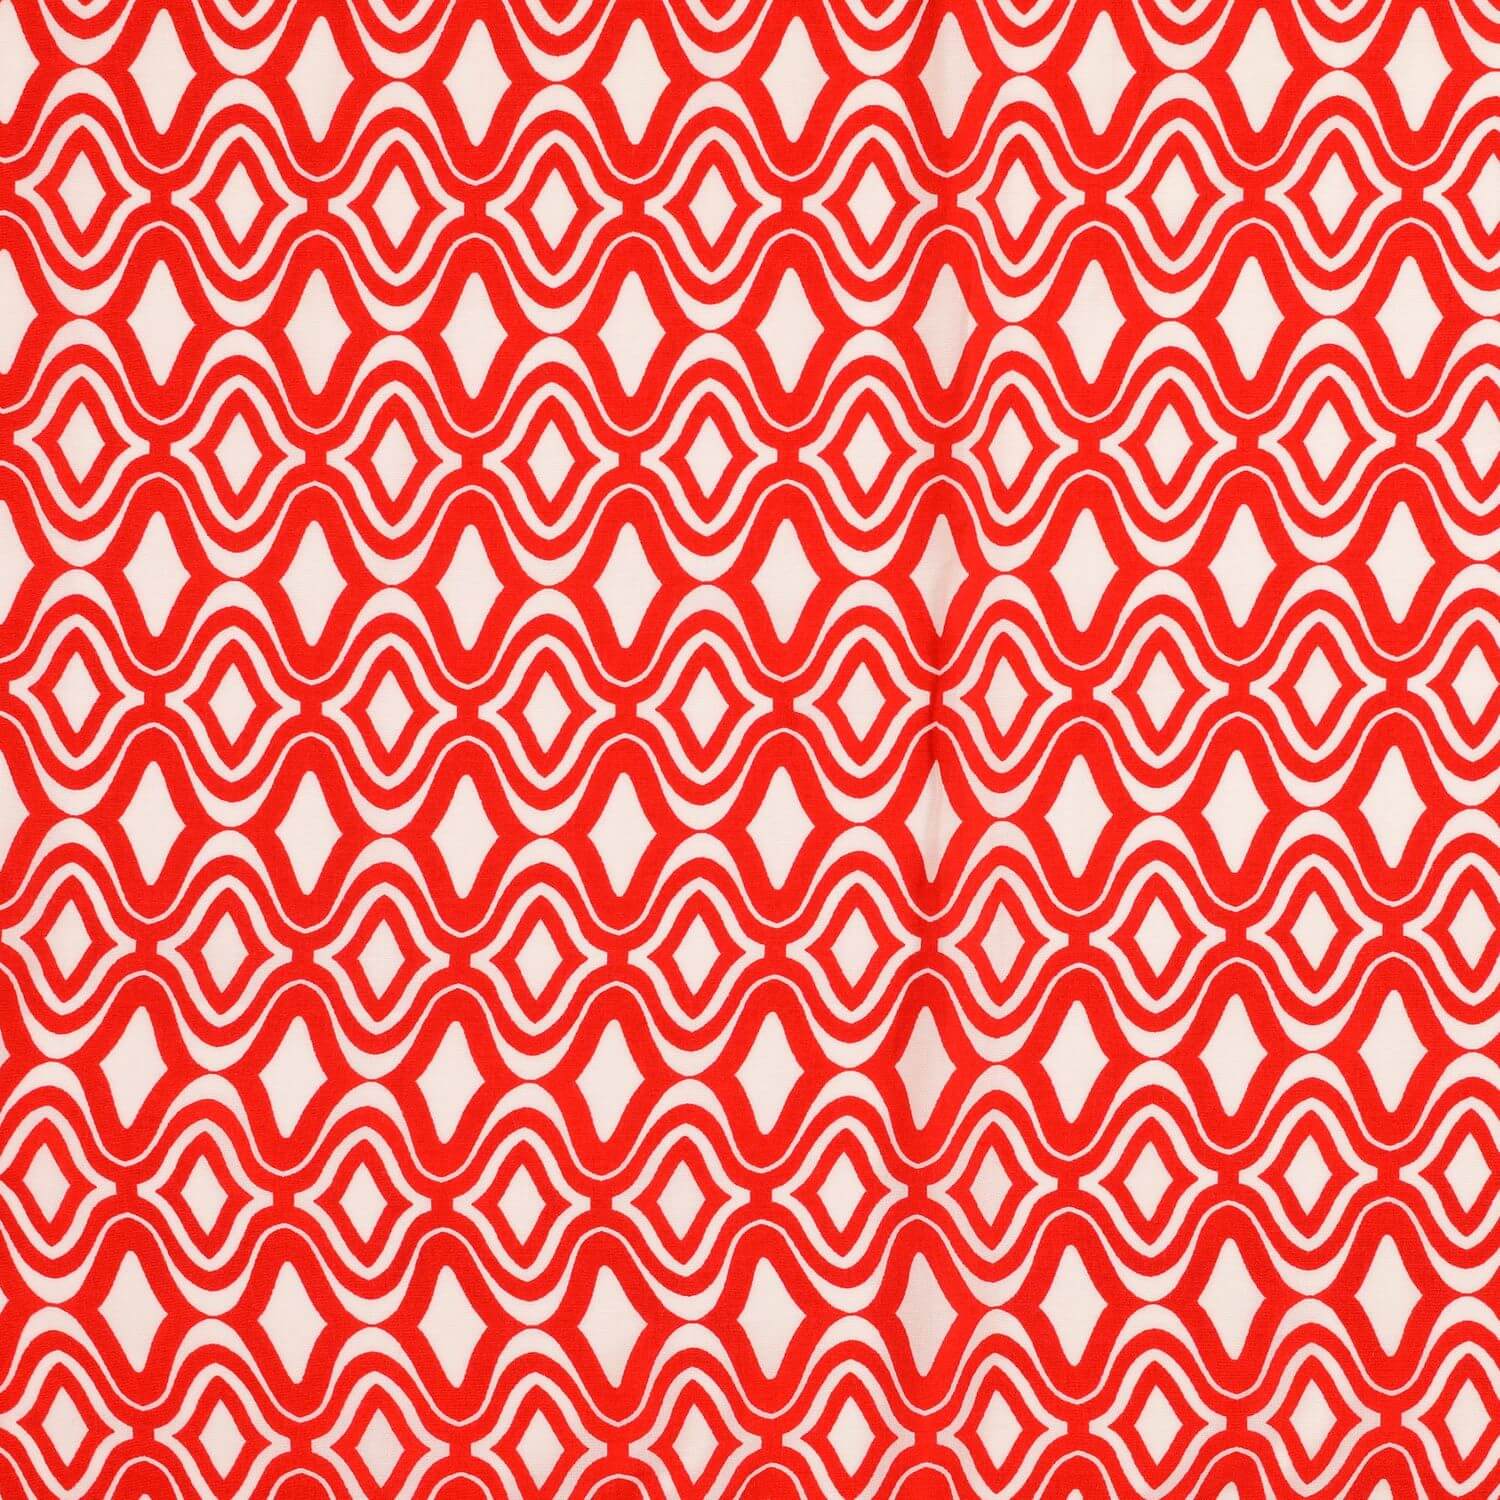 Viskose Popeline - Wellen Retro Rot auf Weiß